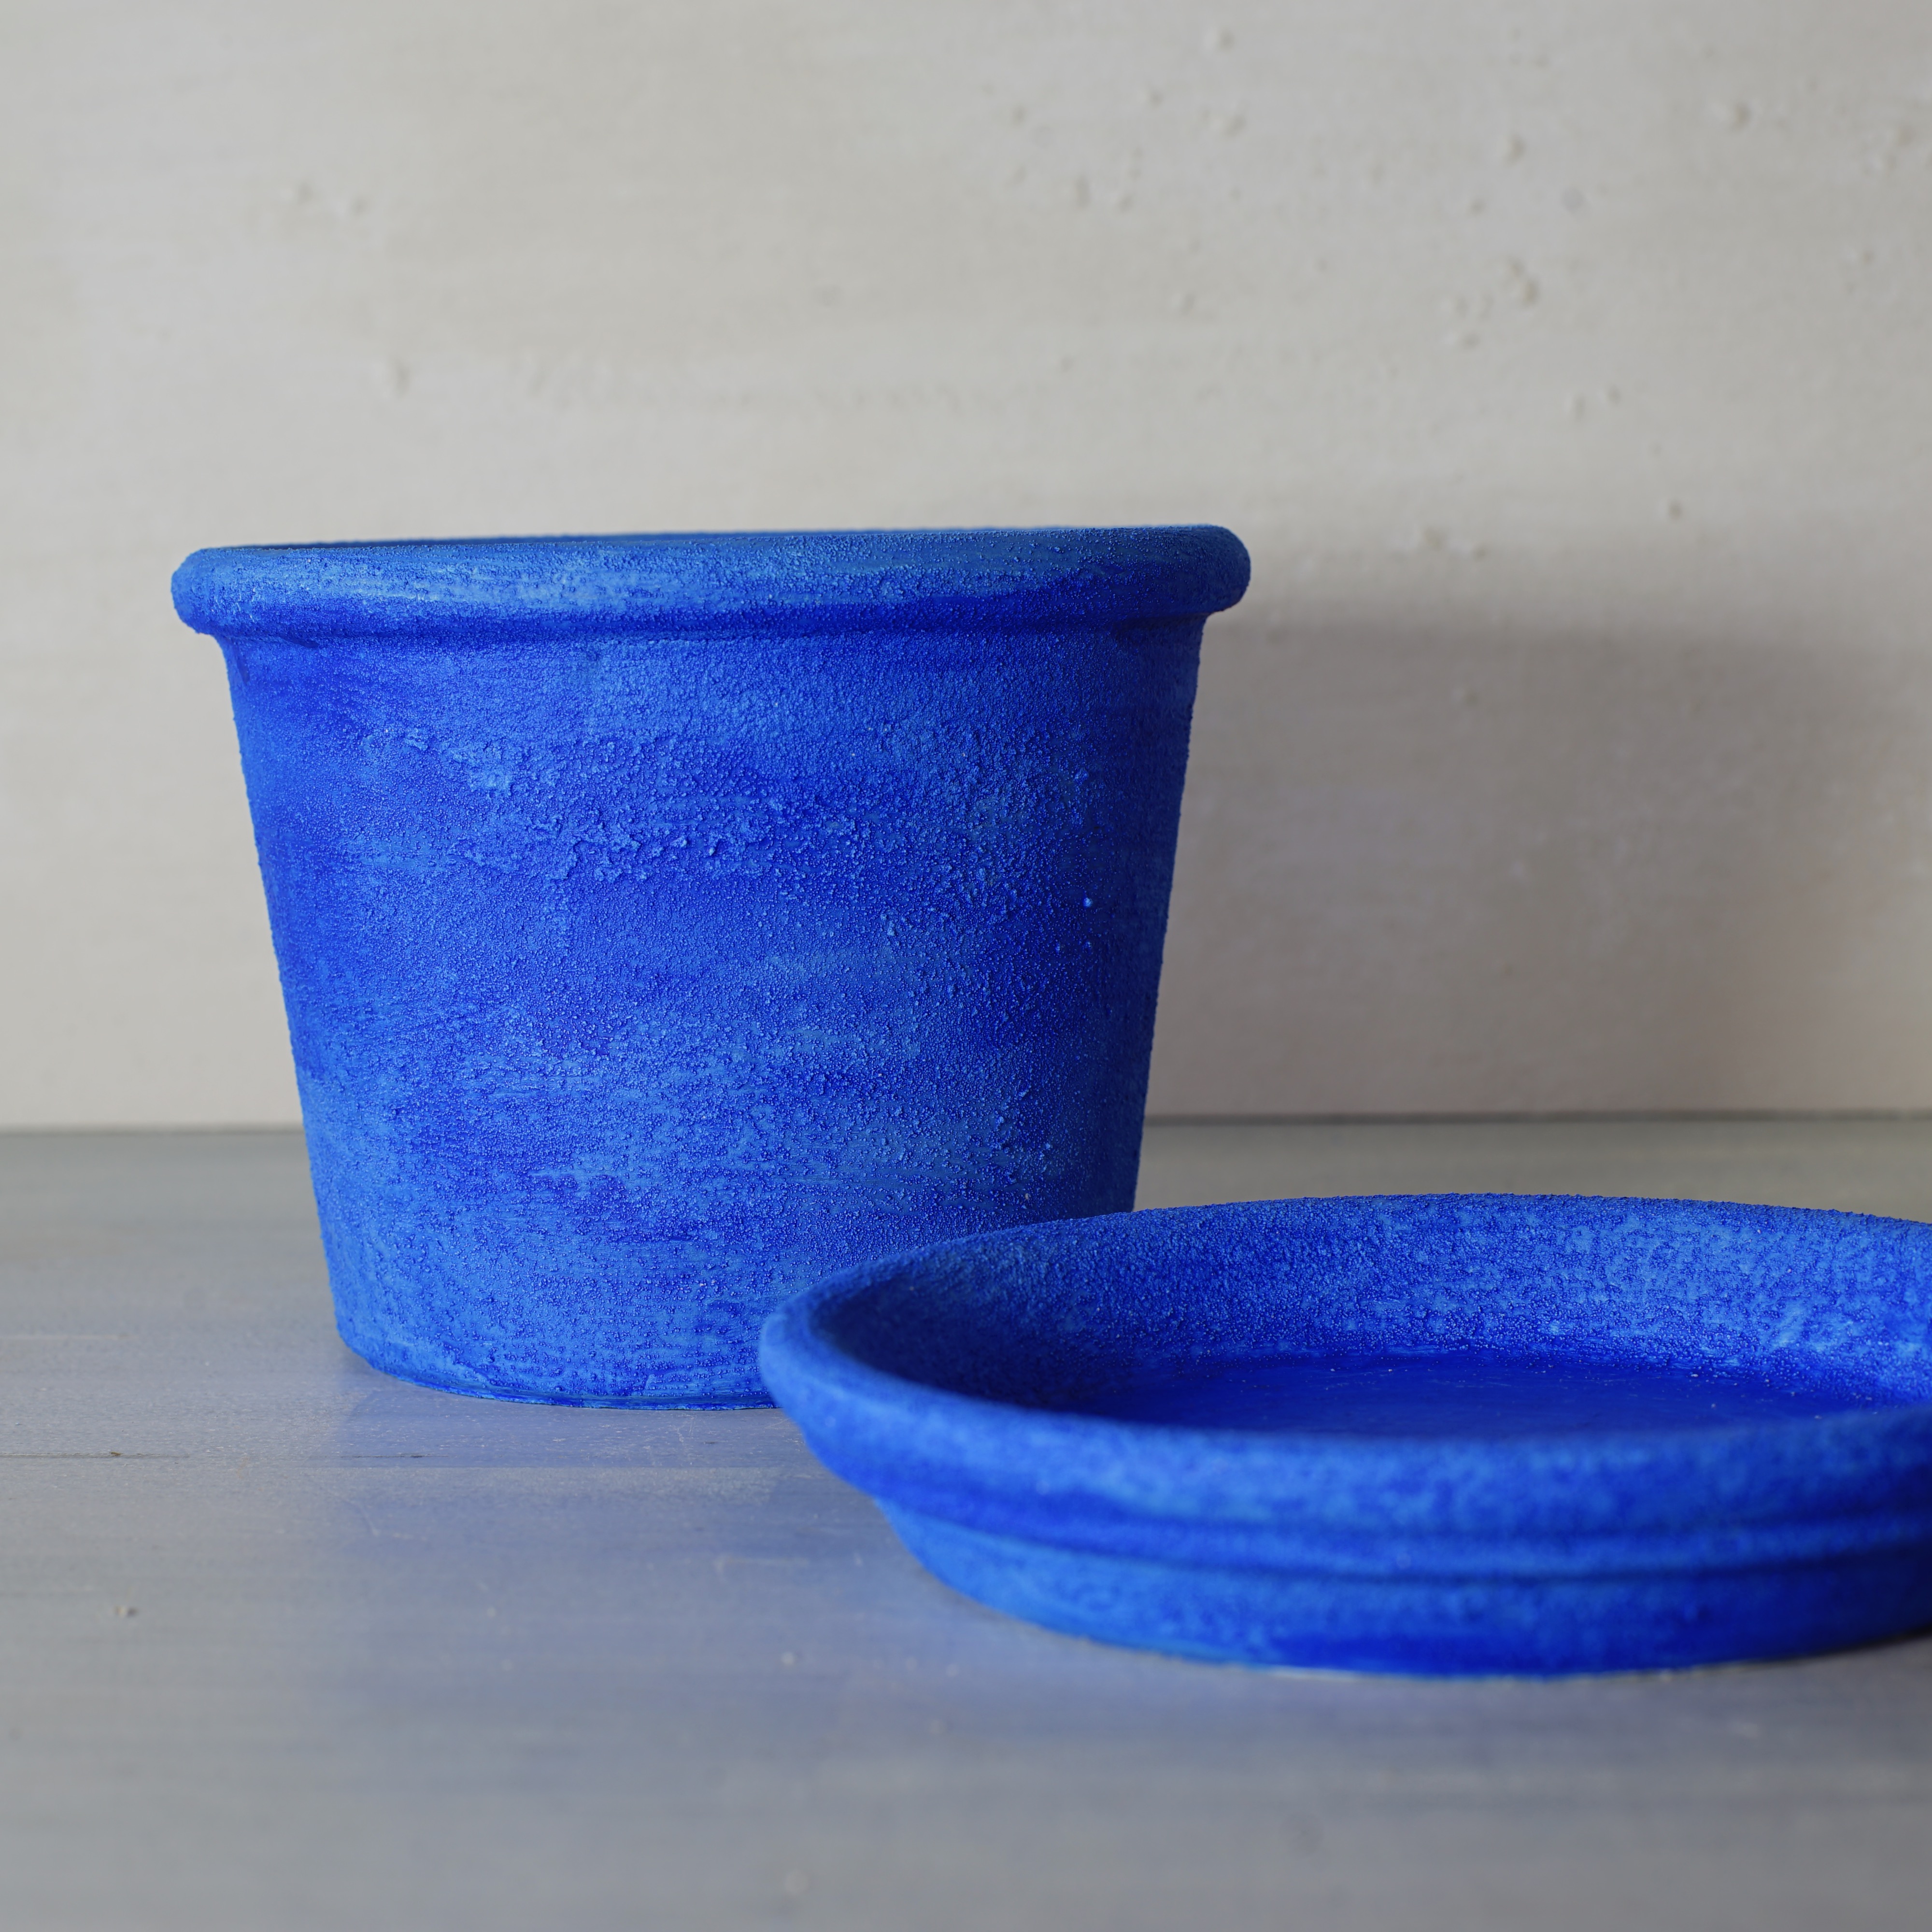 モロッコの青い街シャウエンを想わせる鮮やかなブルーの鉢で癒しを